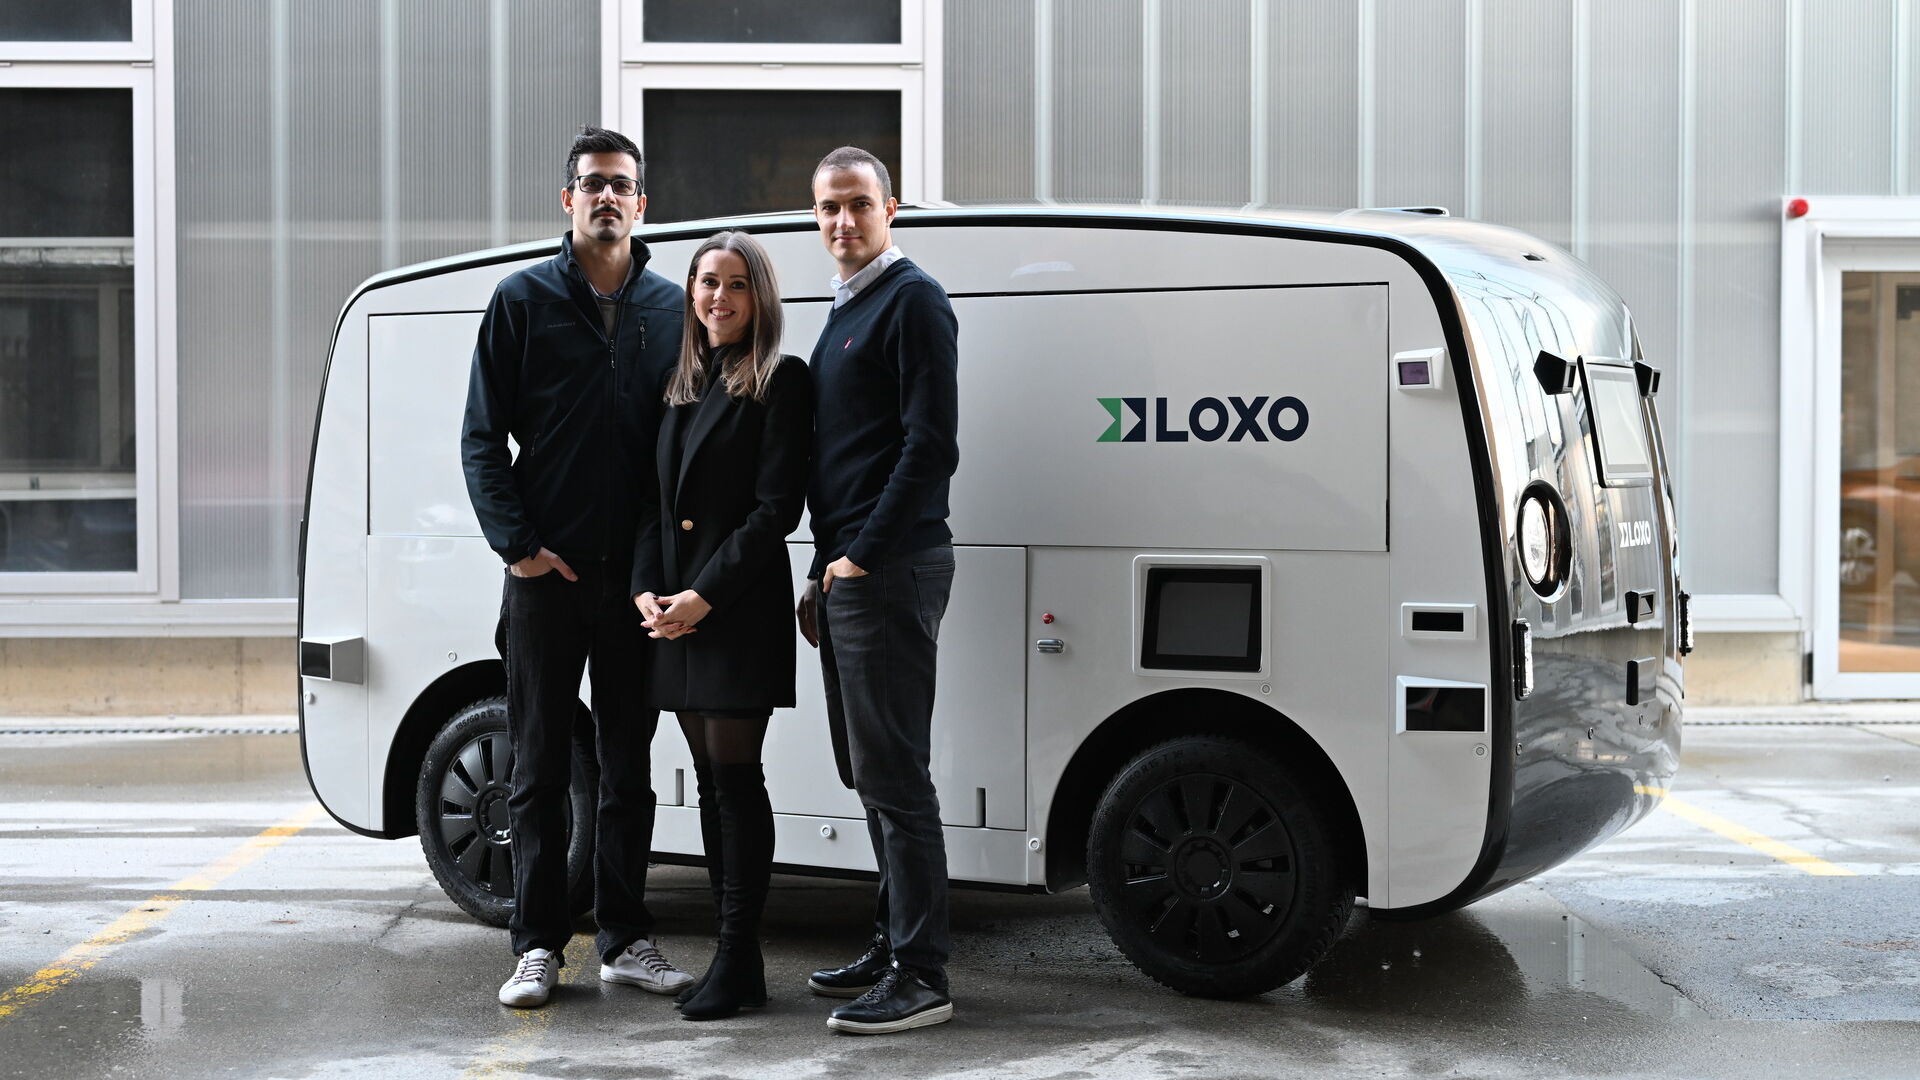 LOXO: Amin Amini, Lara Amini-Rentsch ແລະ Claudio Panizza, ຜູ້ກໍ່ຕັ້ງ Bern start-up LOXO, ໄດ້ສ້າງ Alpha ທັງຫມົດໃນສະວິດເຊີແລນ, ລົດຕູ້ຂັບລົດດ້ວຍຕົນເອງສໍາລັບການຈັດສົ່ງໄລຍະສັ້ນ.